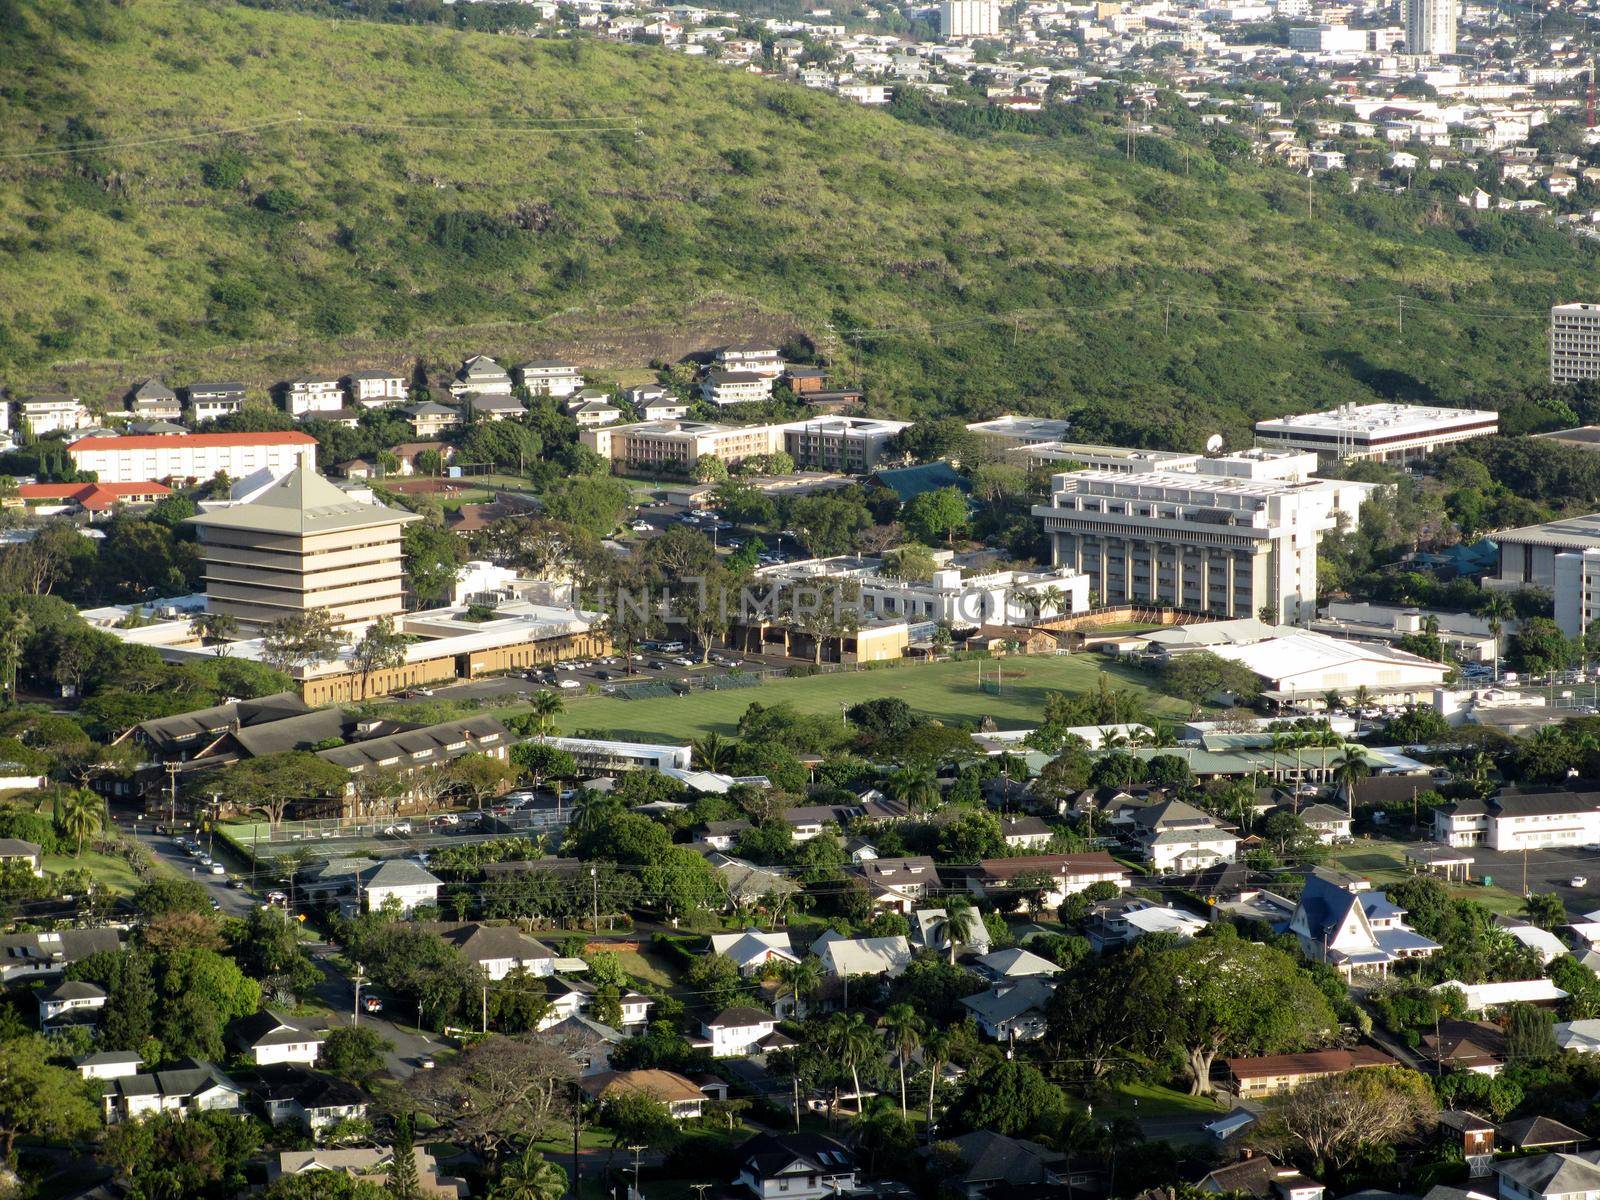 Honolulu - April 3, 2012: Aerial view of Landmark Mid Pacific institute, University of Hawaii, and surround neighborhood in Manoa in Honolulu, Hawaii.